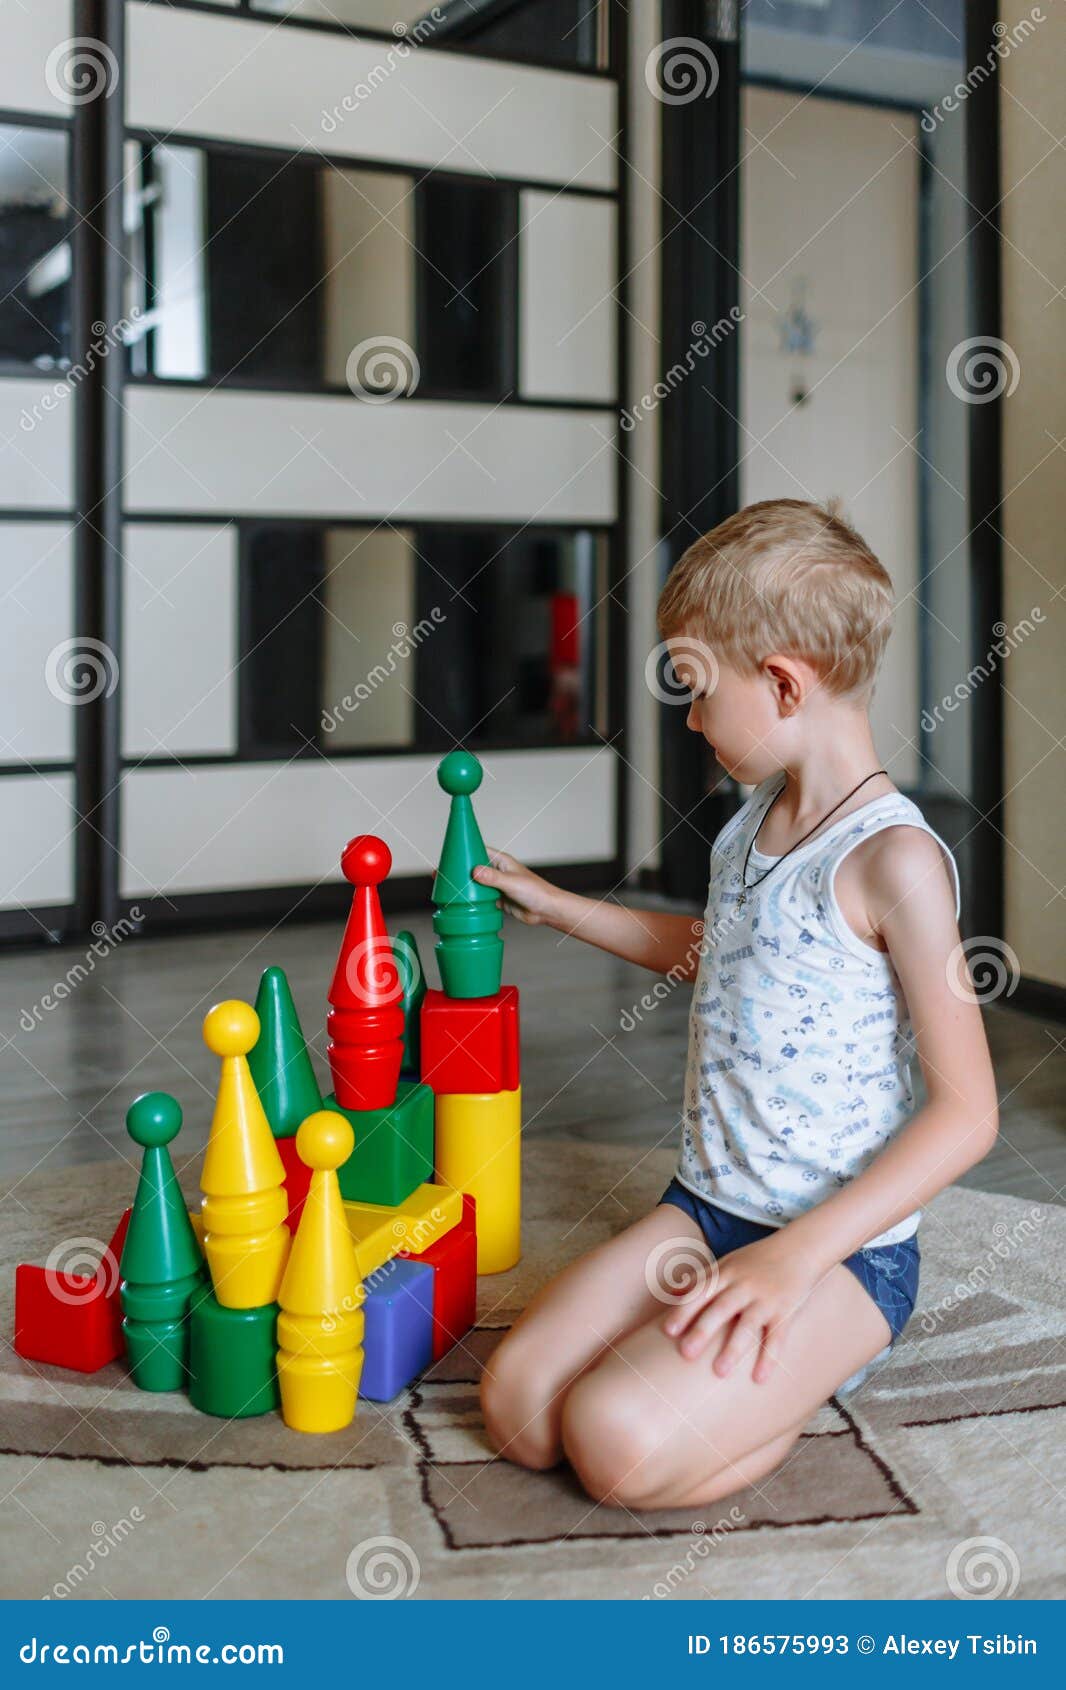 Dois meninos brincando com brinquedos na sala de jogos.